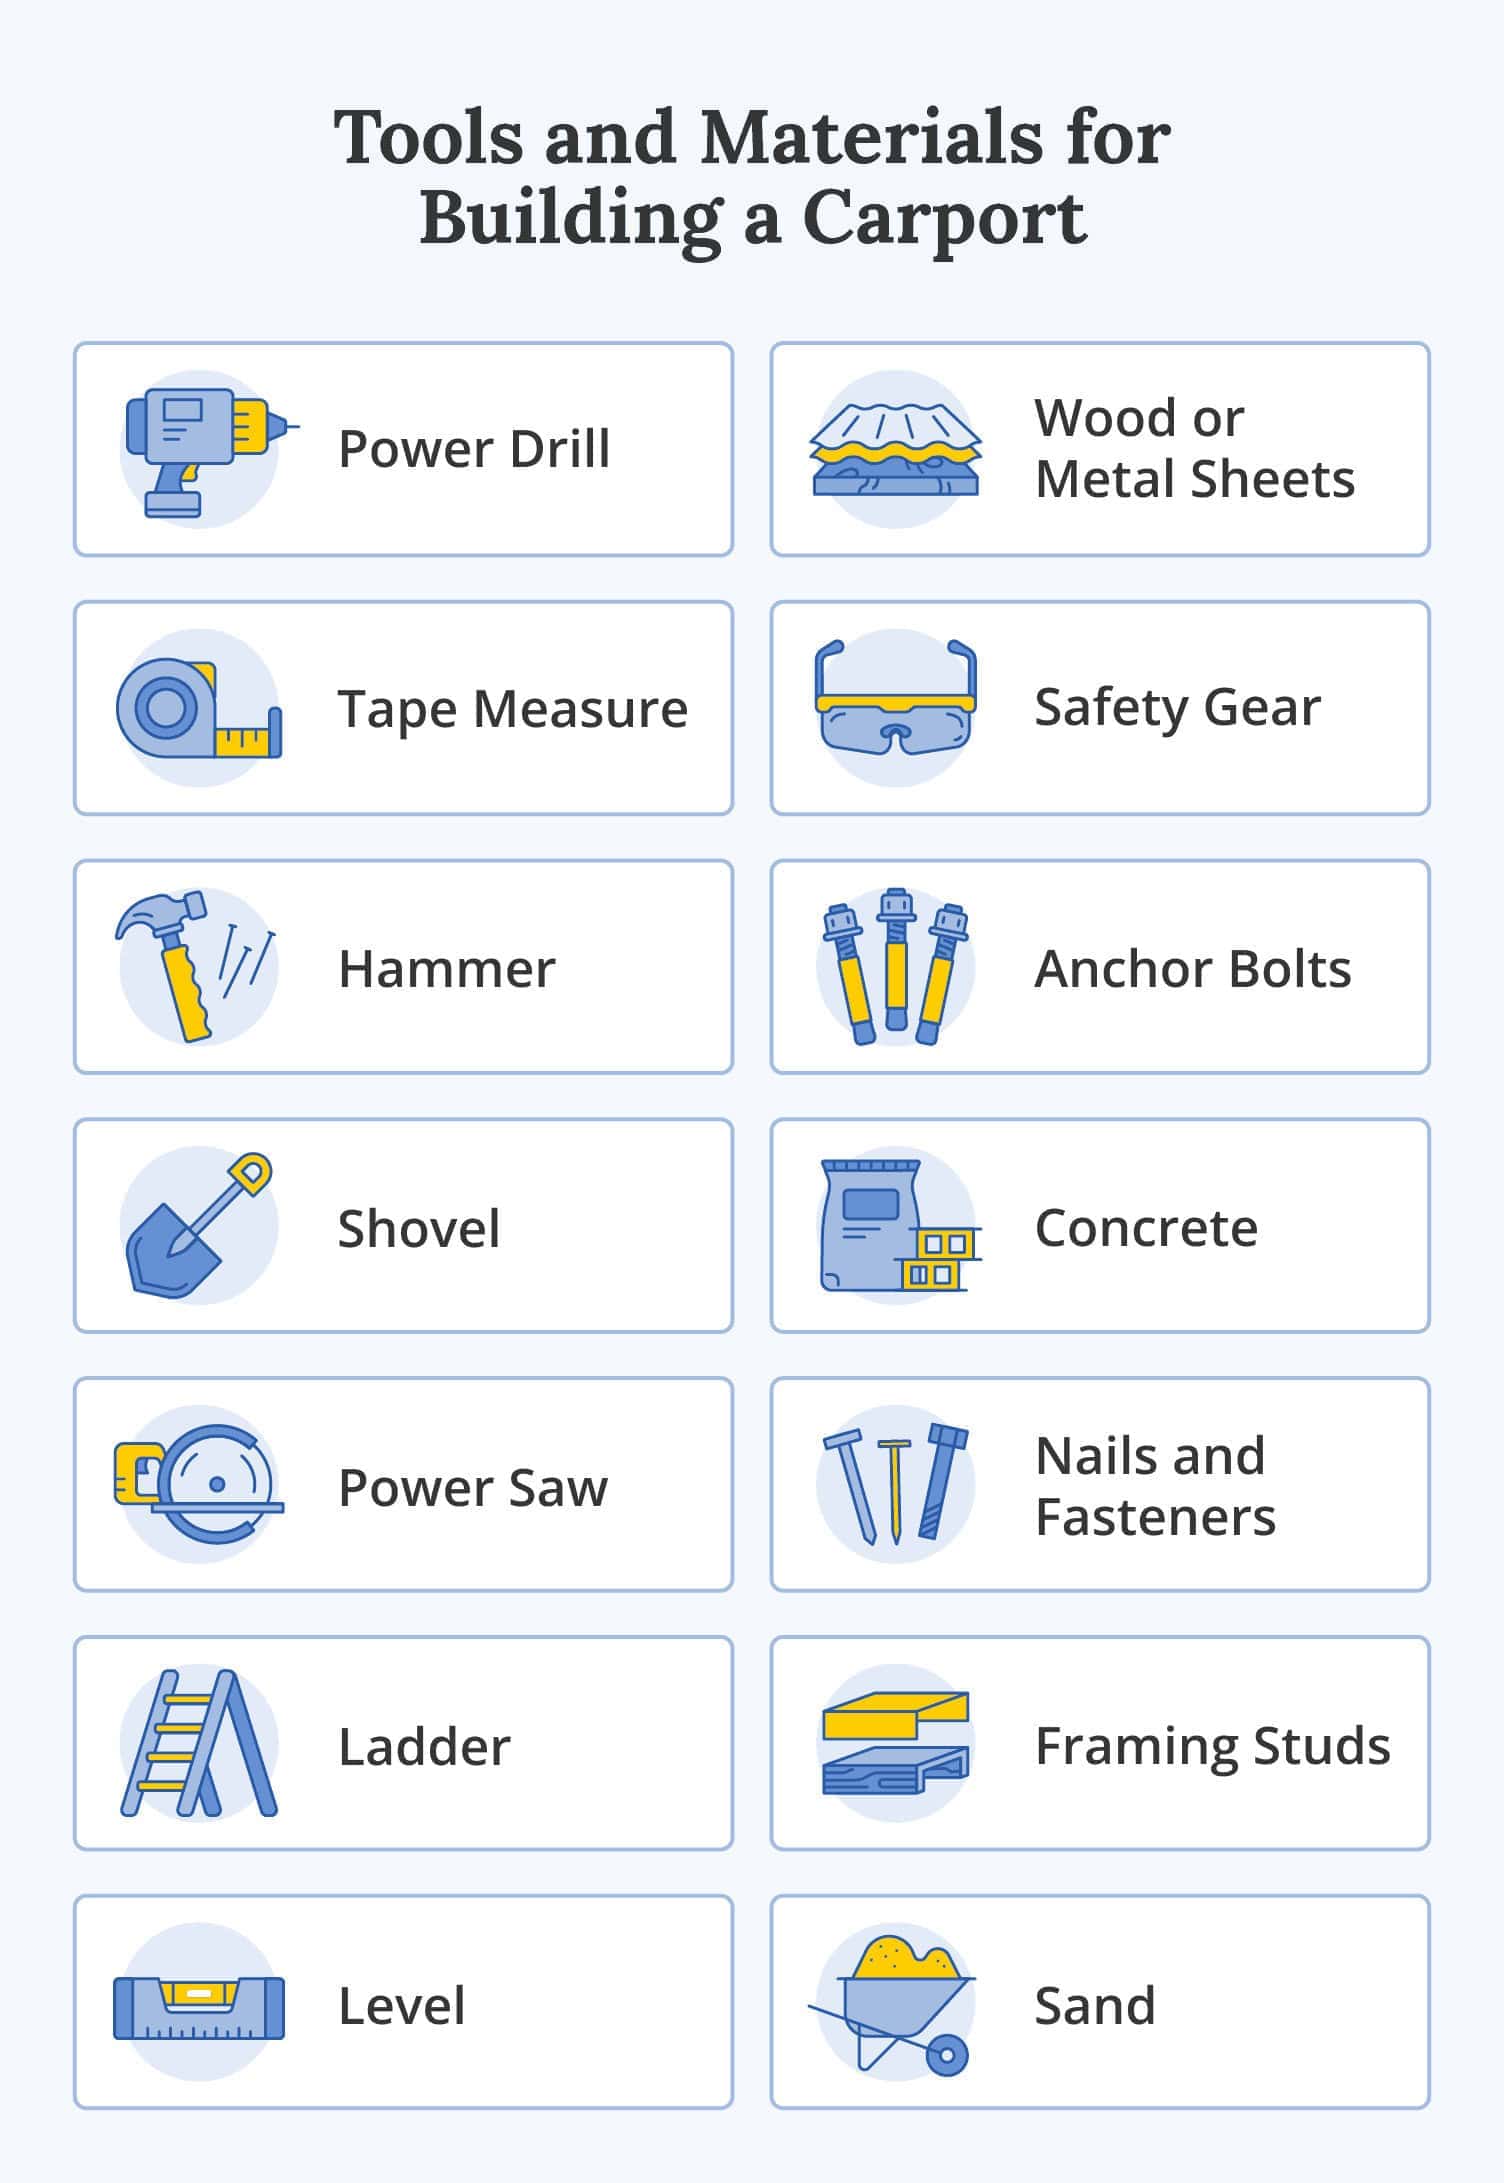 Tools and materials for building a carport